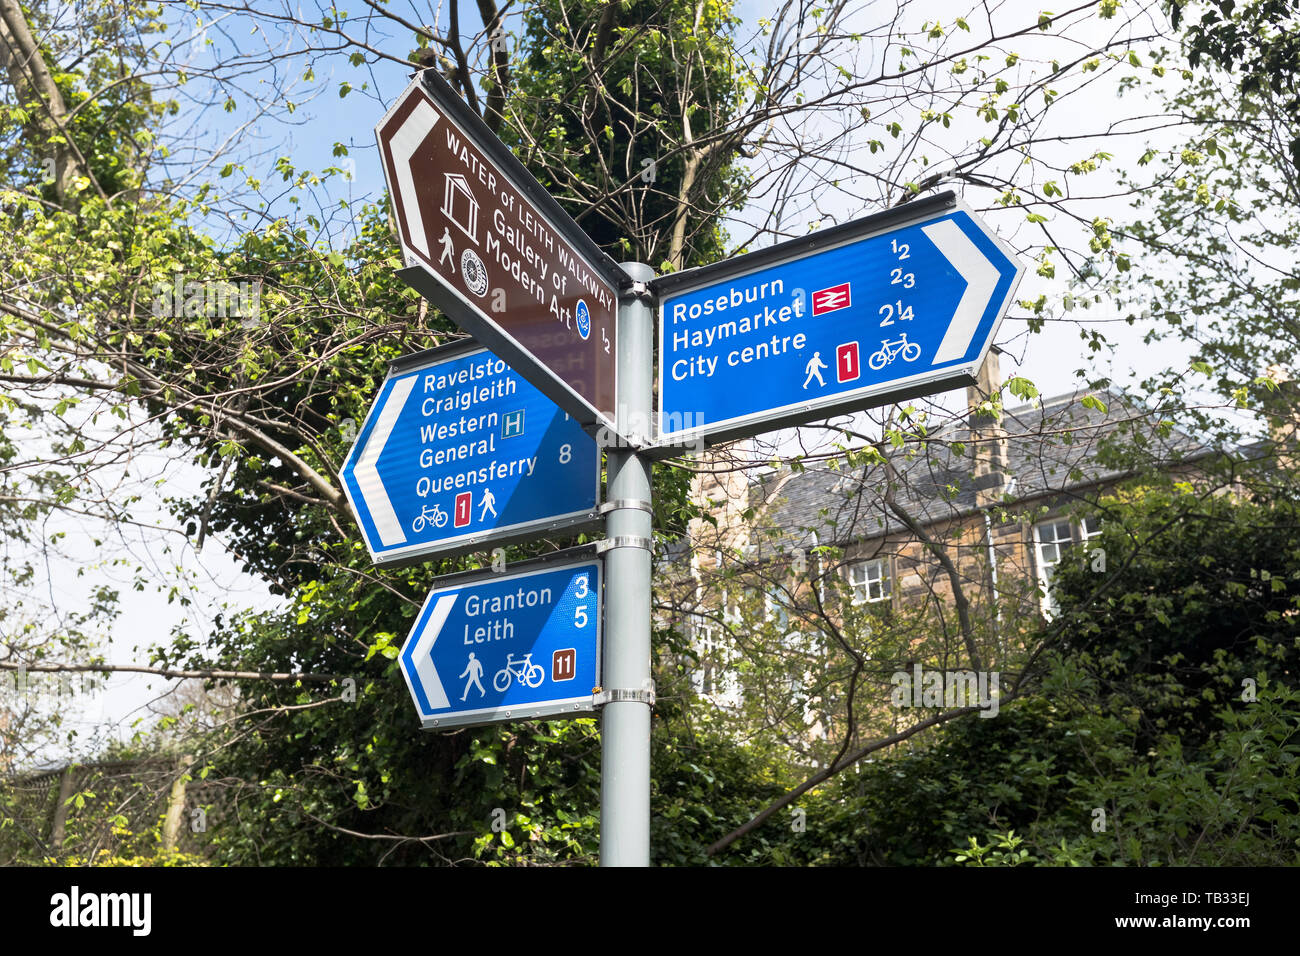 dh percorso ciclabile e sentiero ROSEBURN EDINBURGH segnaletica scozzese cartello direzione post scozia percorsi pubblici regno unito Foto Stock